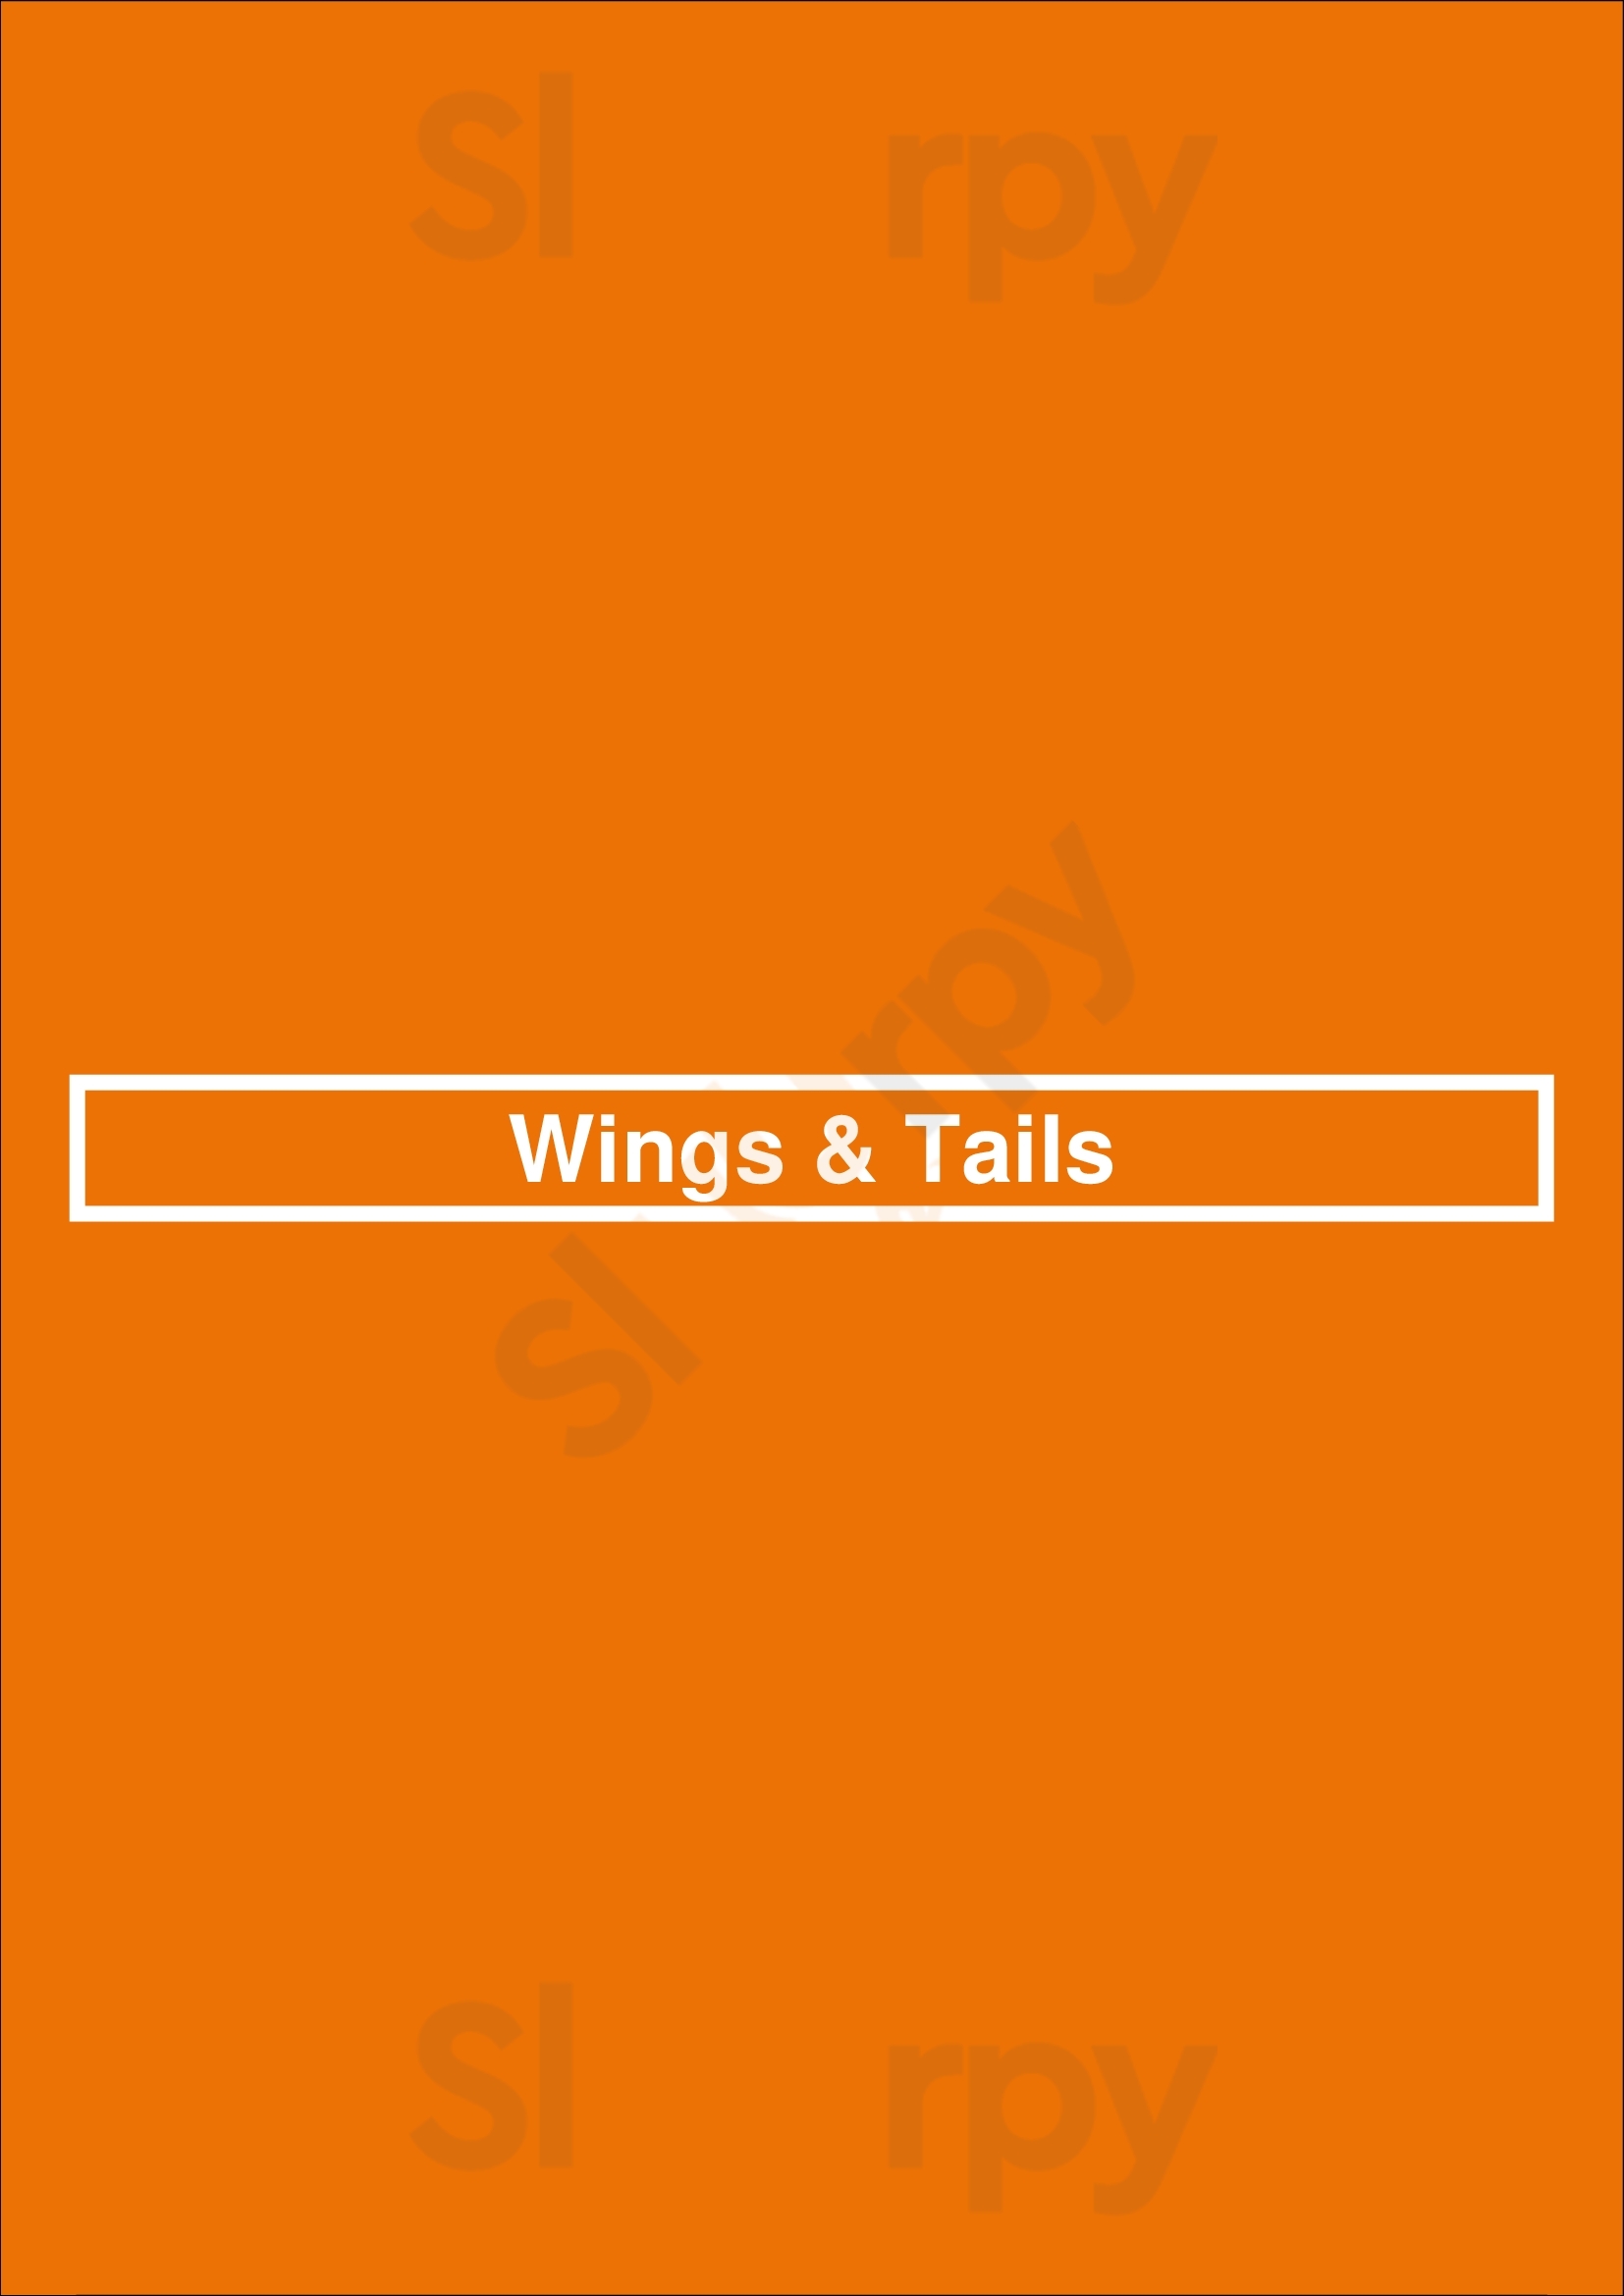 Wings & Tails Los Angeles Menu - 1